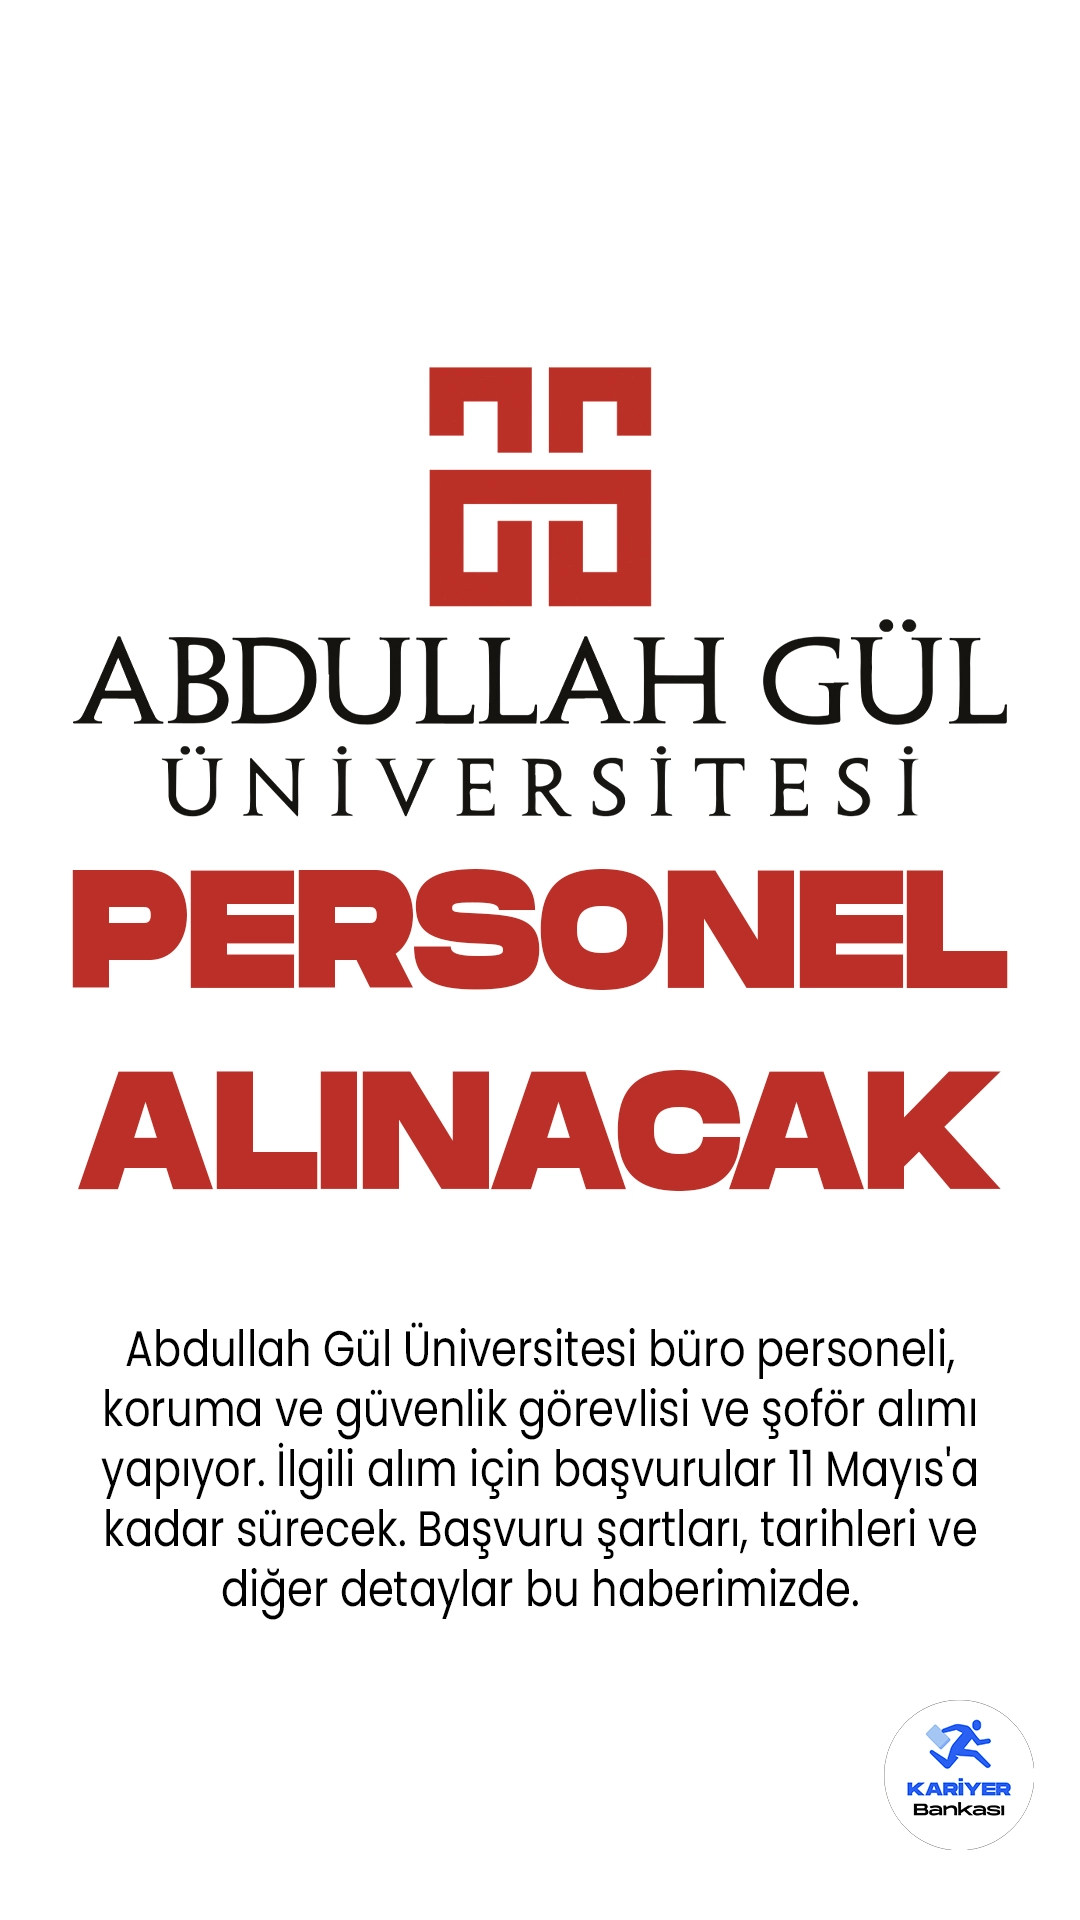 Abdullah Gül Üniversitesi büro personeli, koruma ve güvenlik görevlisi ve şoför alımı yapıyor. İlgili alım için başvurular 11 Mayıs'a kadar sürecek. Başvuru şartları, tarihleri ve diğer detaylar bu haberimizde.